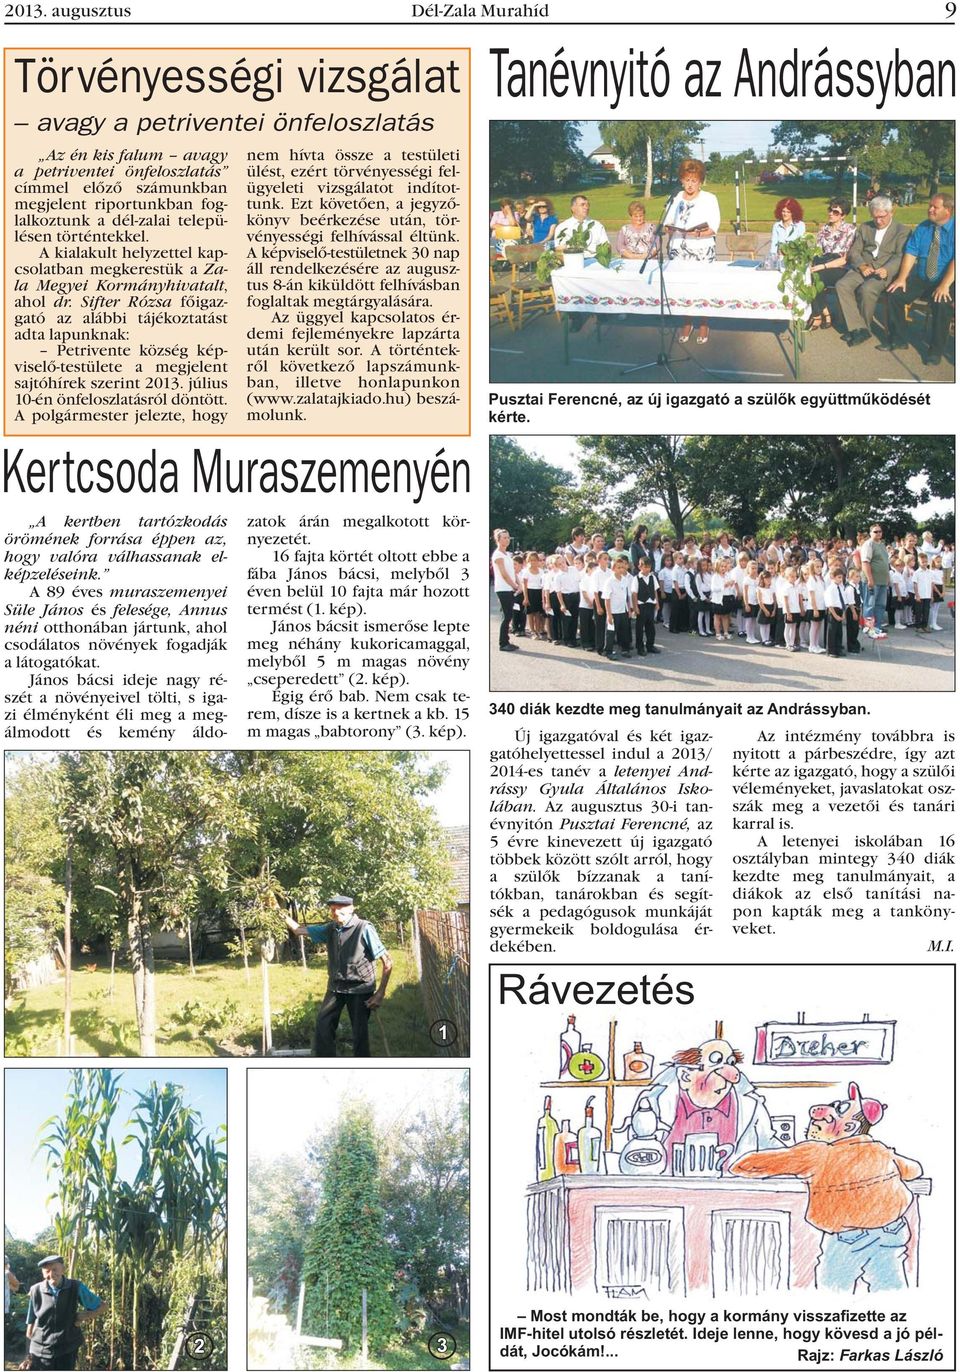 Sifter Rózsa fõigazgató az alábbi tájékoztatást adta lapunknak: Petrivente község képviselõ-testülete a megjelent sajtóhírek szerint 2013. július 10-én önfeloszlatásról döntött.